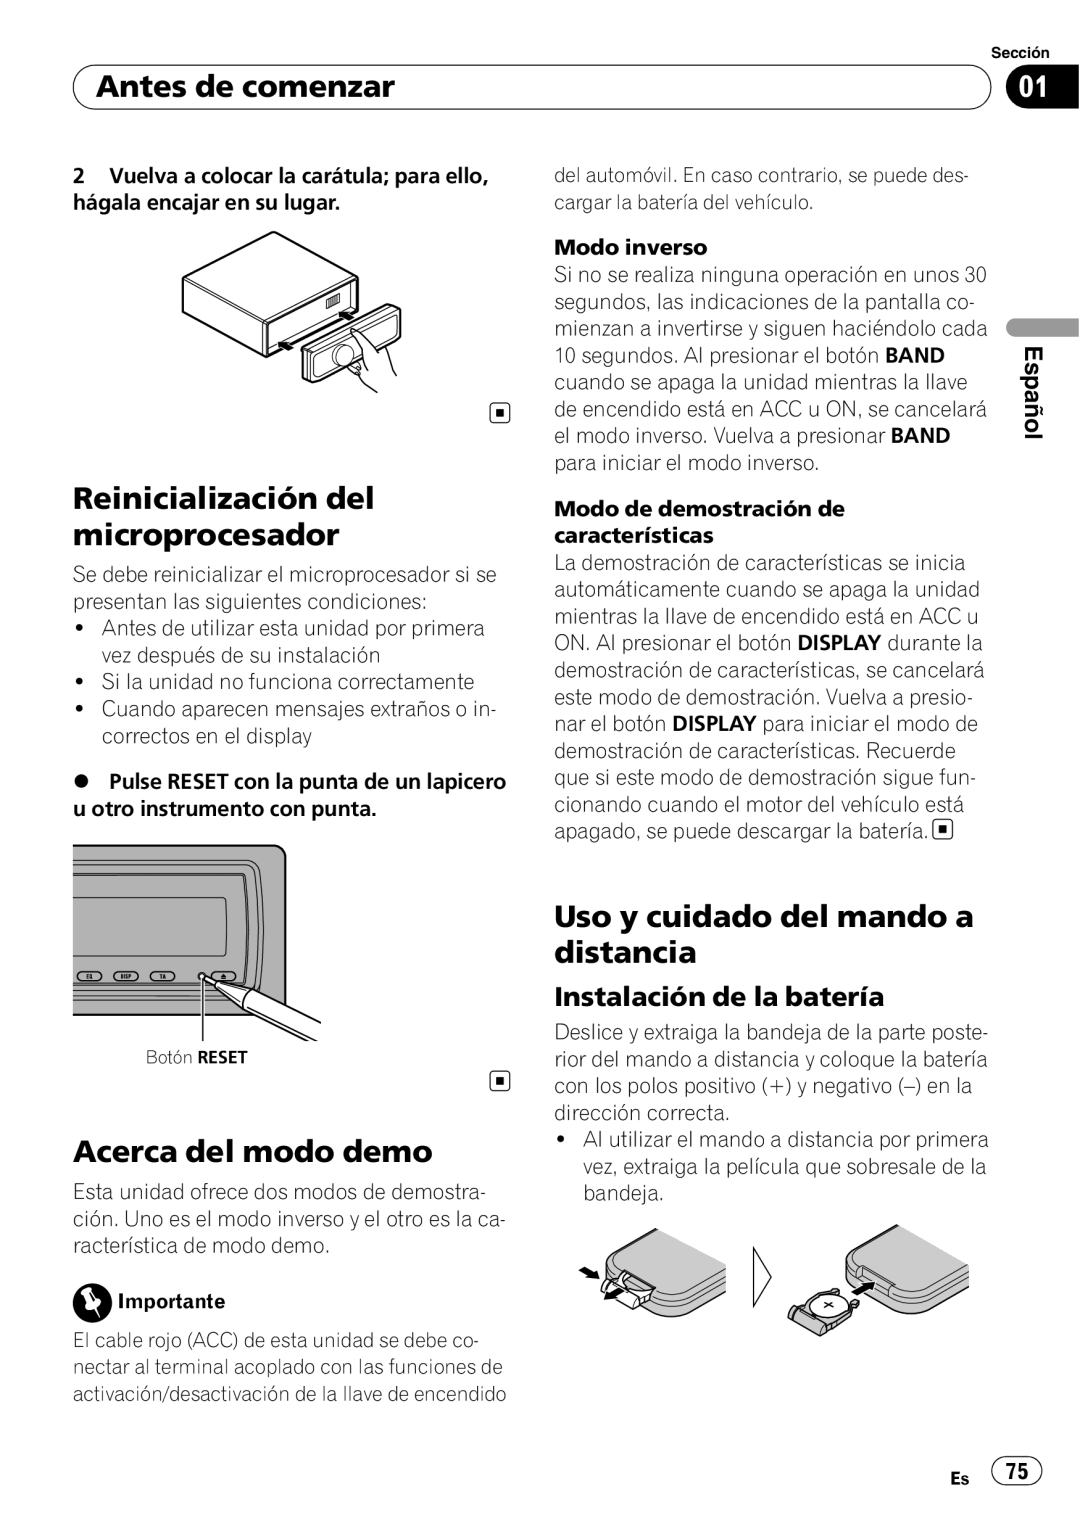 Pioneer DEH-P85BT Reinicialización del microprocesador, Acerca del modo demo, Uso y cuidado del mando a distancia, Español 